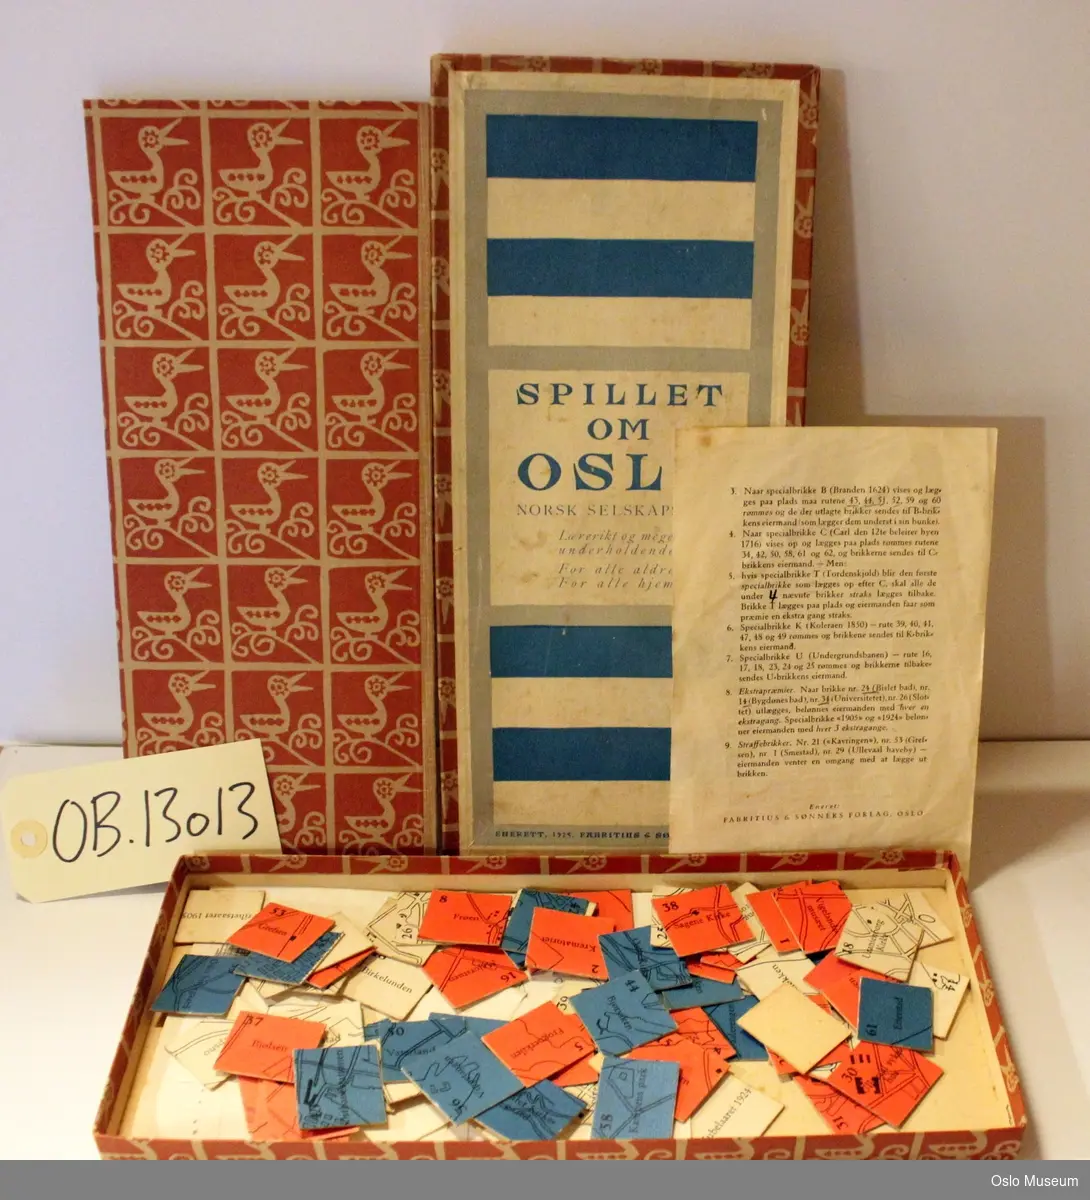 Rektangulært brettspill i eske med 72 brikker og spilleregler. Brun eske, "Spillet om Oslo" i blått på hvit bunn.